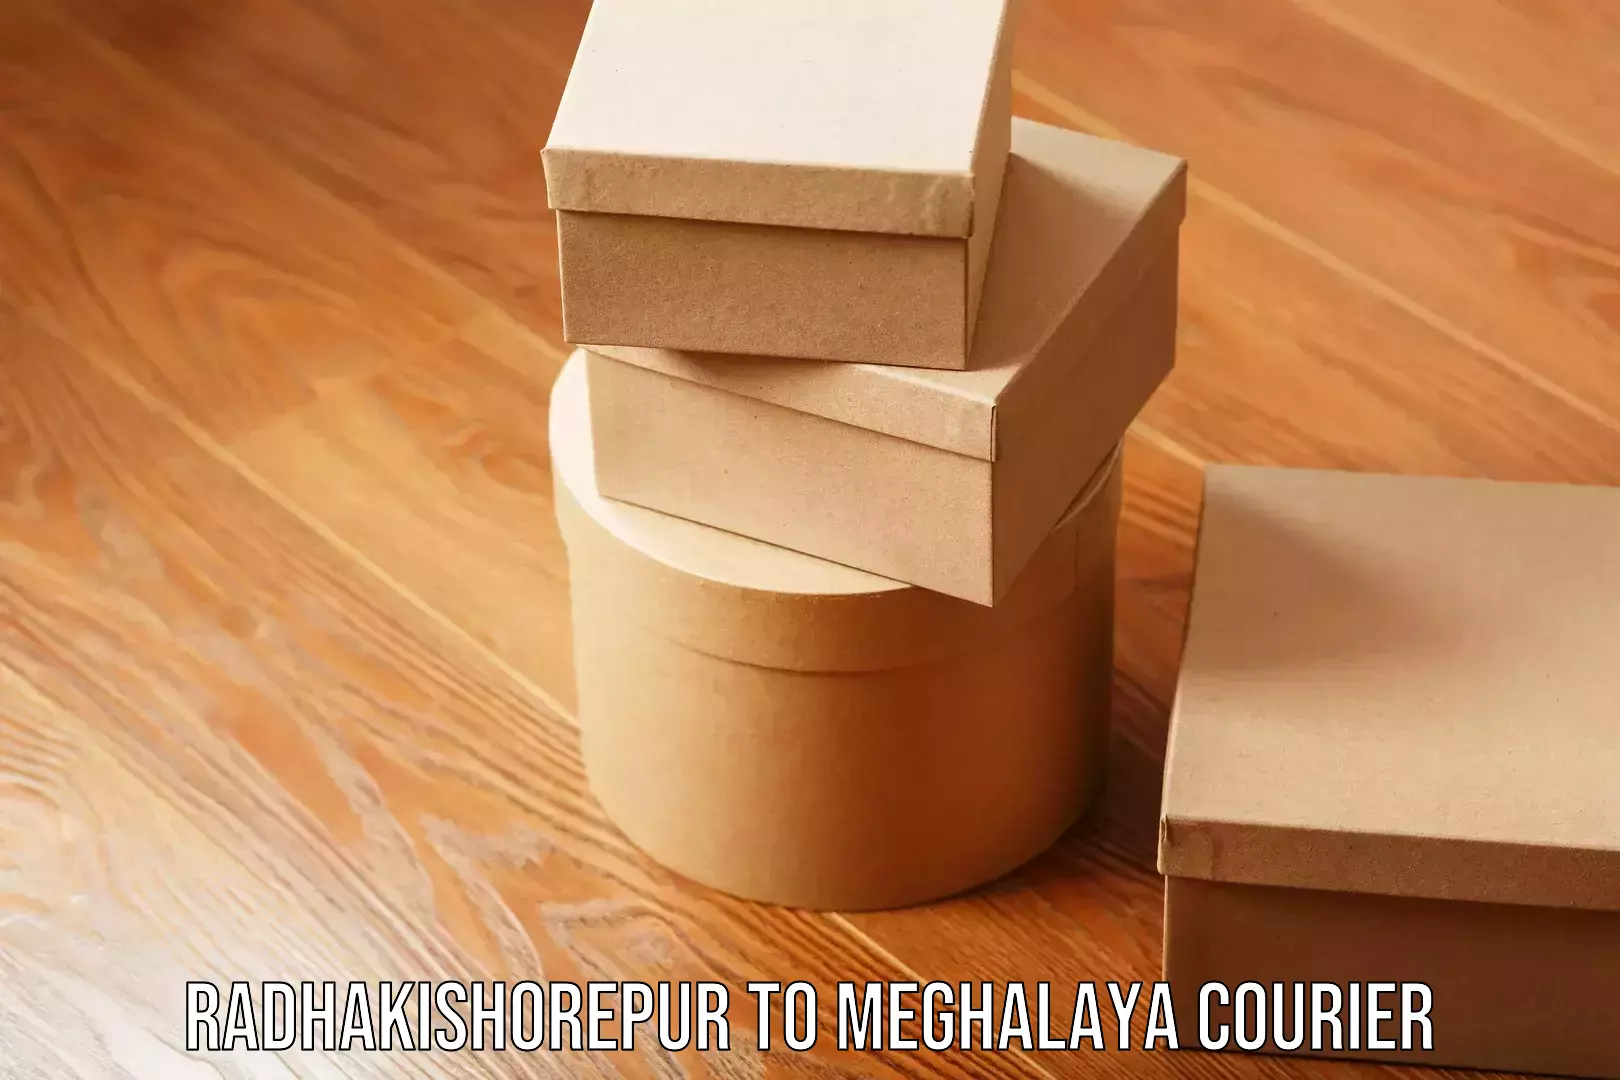 Bulk courier orders in Radhakishorepur to Meghalaya